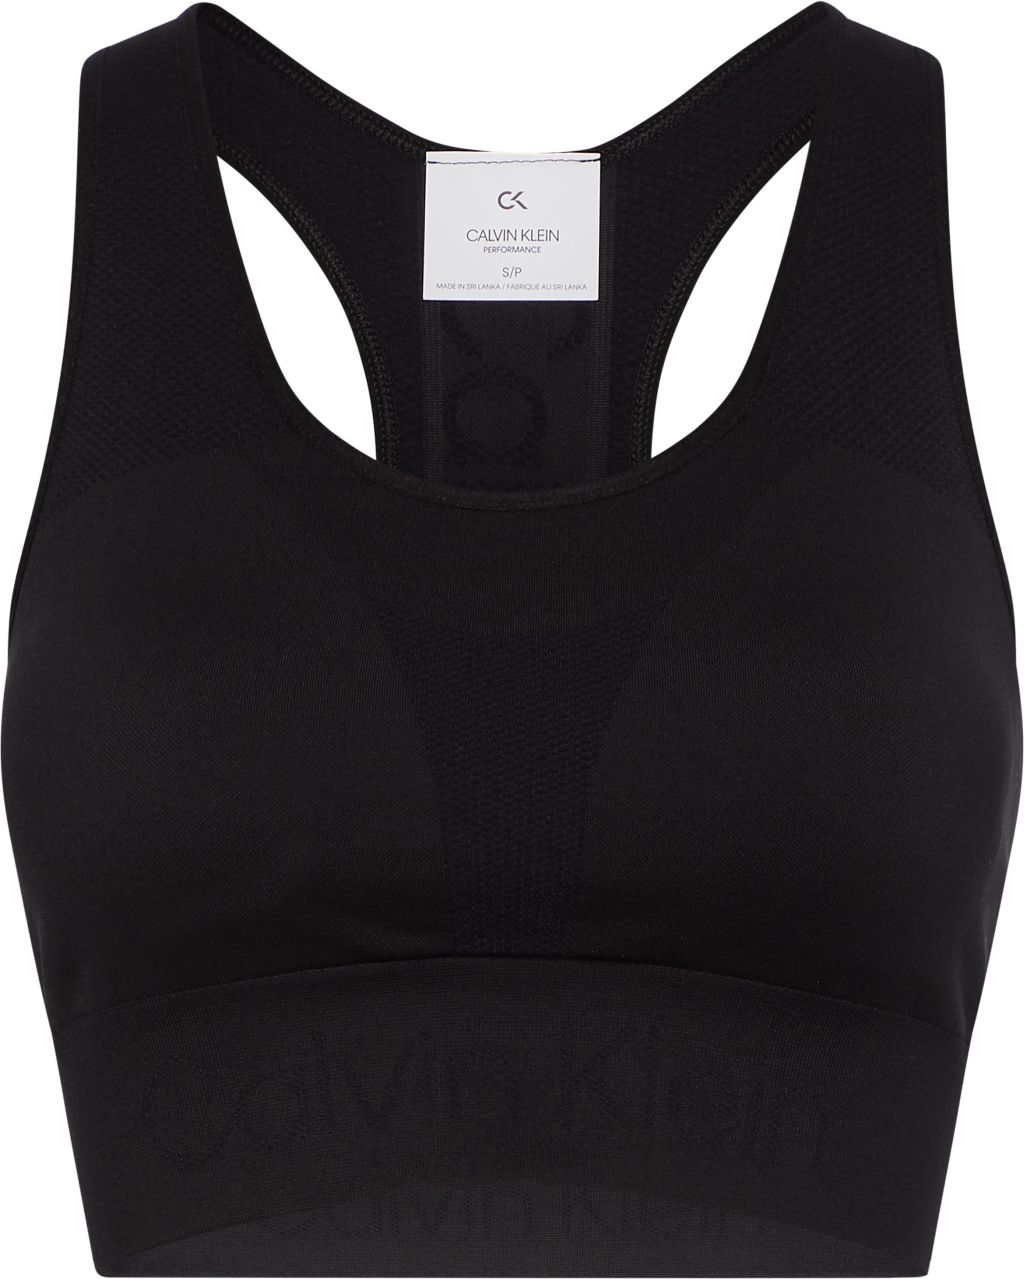 Women's bra Calvin Klein Medium Support Sports Bra - black